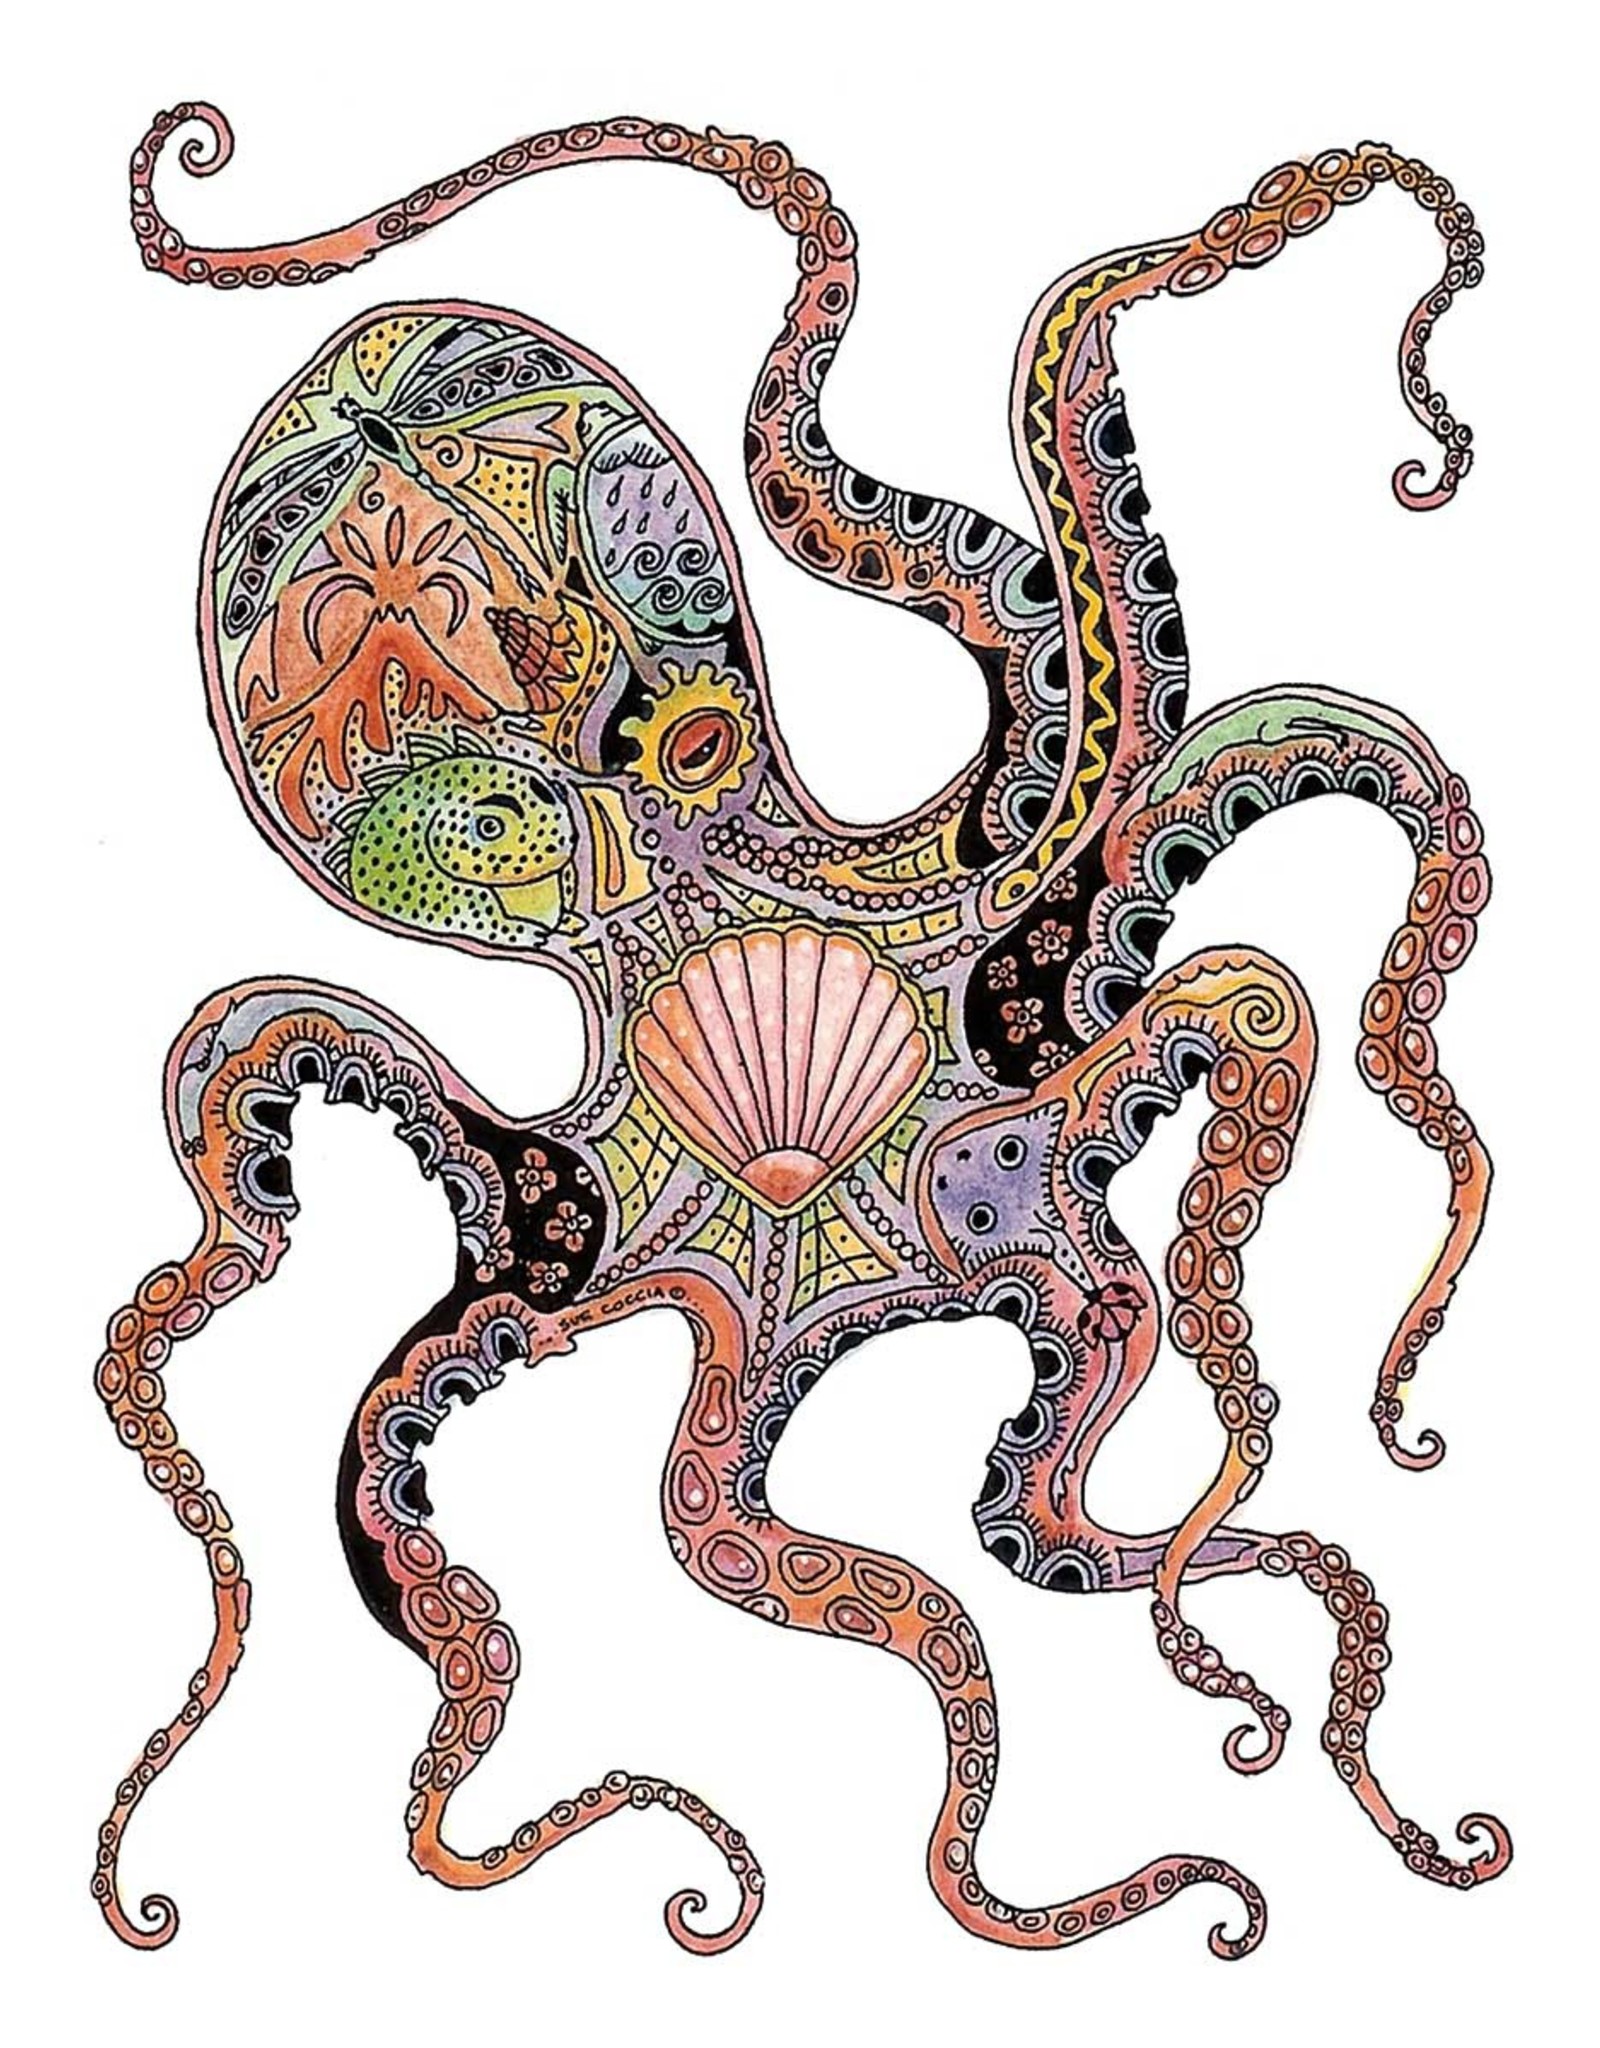 Octopus par Sue Coccia Carte